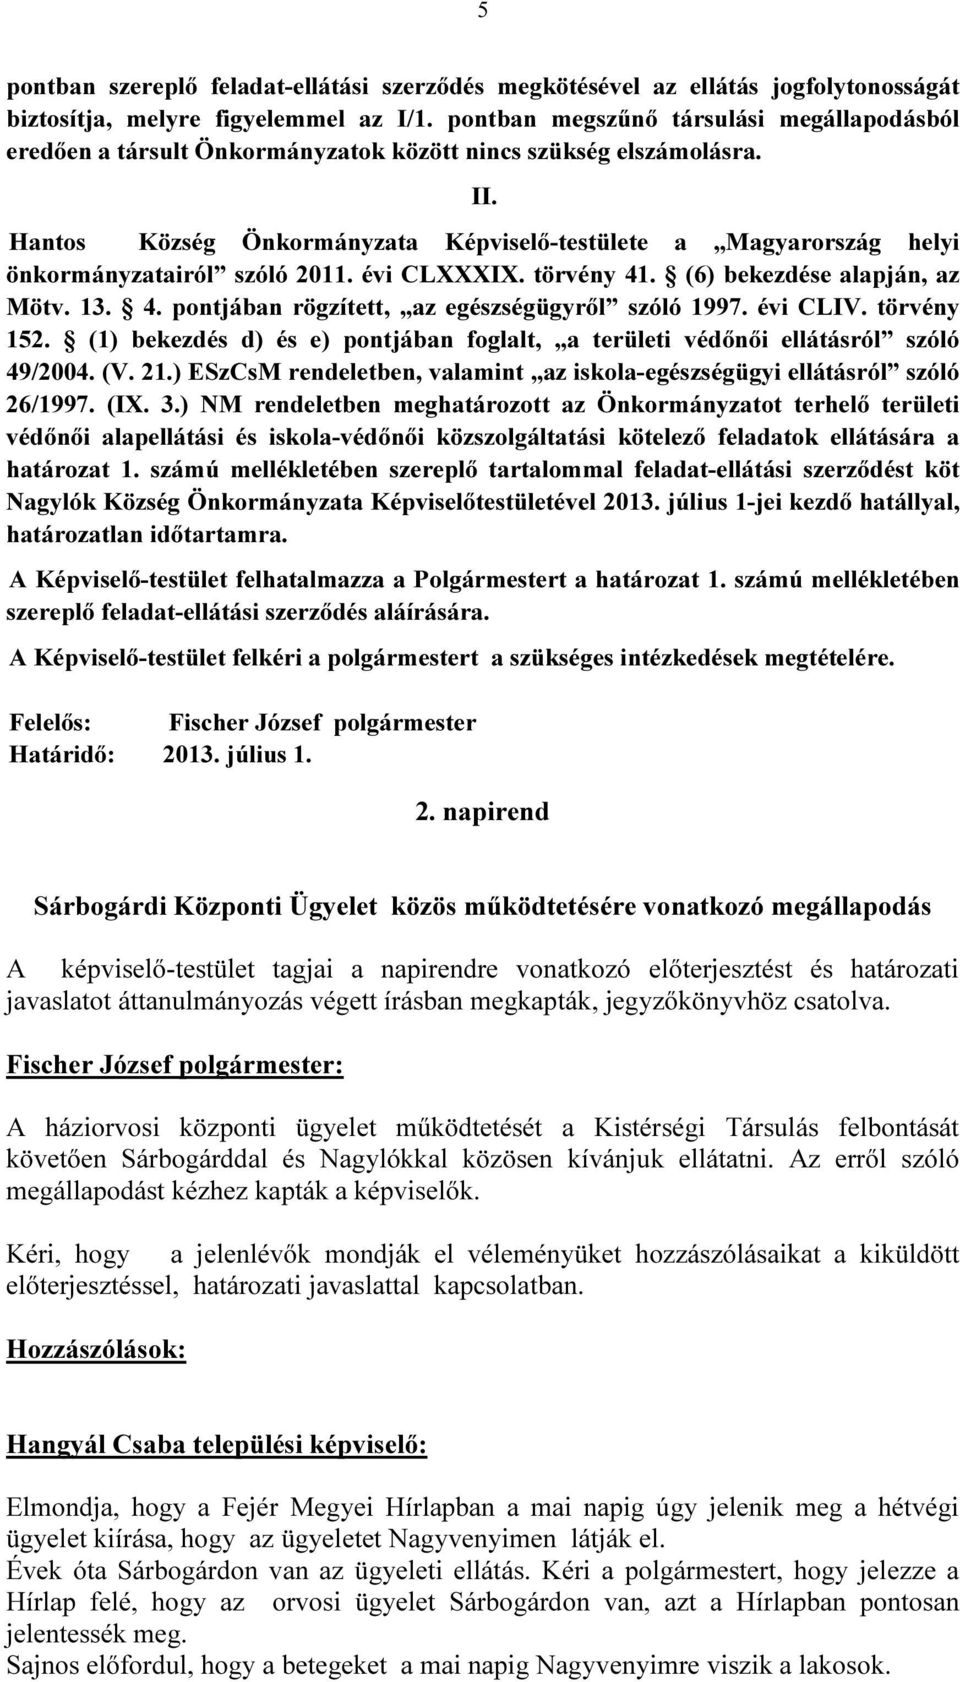 Hantos Község Önkormányzata Képviselő-testülete a Magyarország helyi önkormányzatairól szóló 2011. évi CLXXXIX. törvény 41. (6) bekezdése alapján, az Mötv. 13. 4. pontjában rögzített, az egészségügyről szóló 1997.